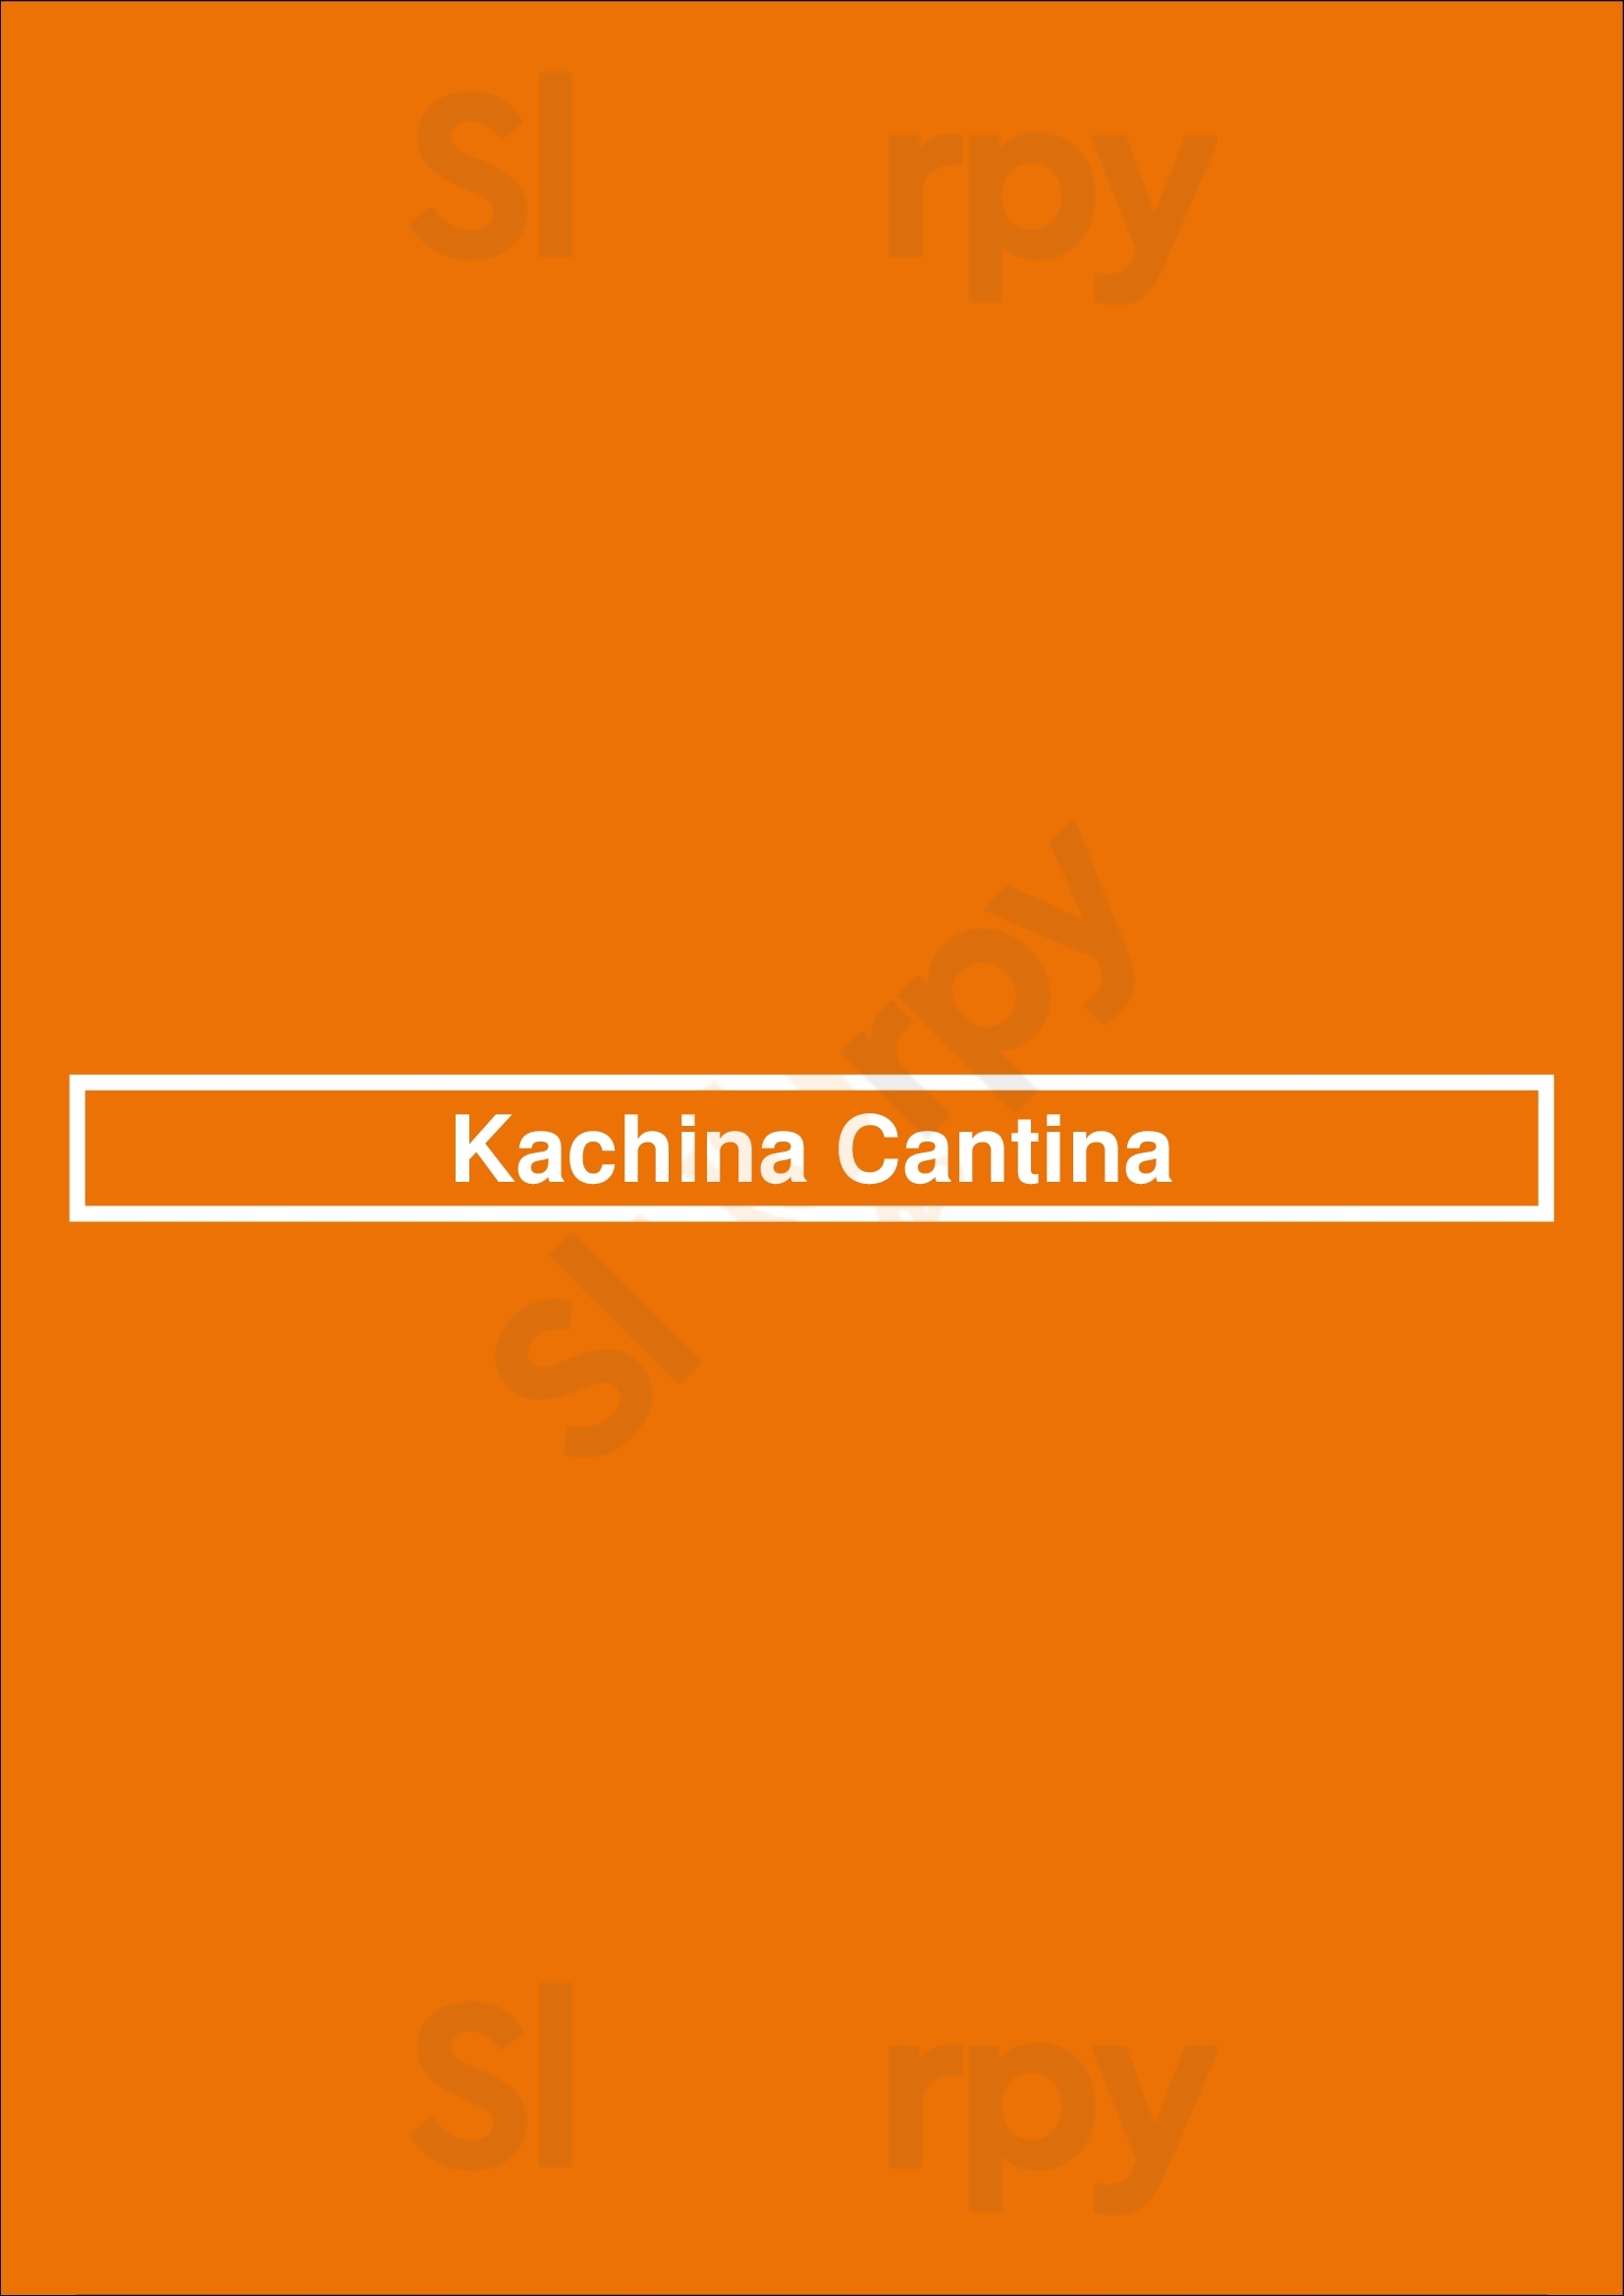 Kachina Cantina Denver Menu - 1